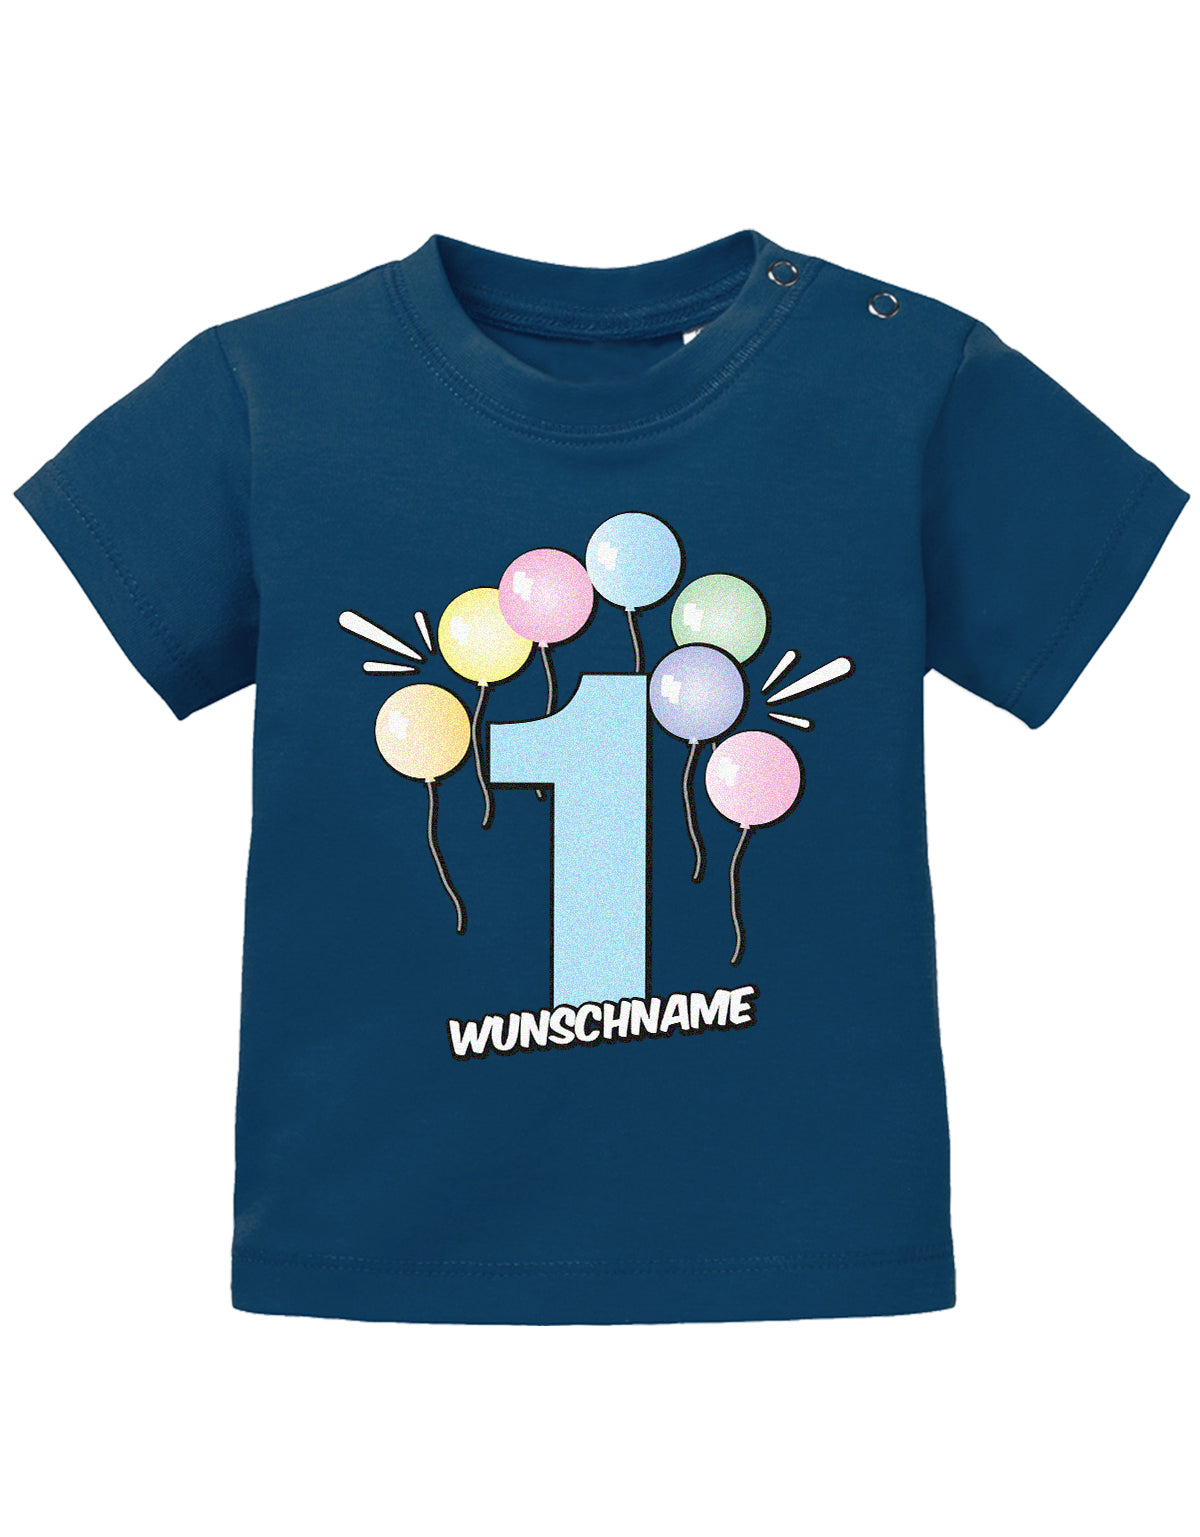 Baby T-Shirt erster Geburtstag mit Ballons und Wunschnamen- navy